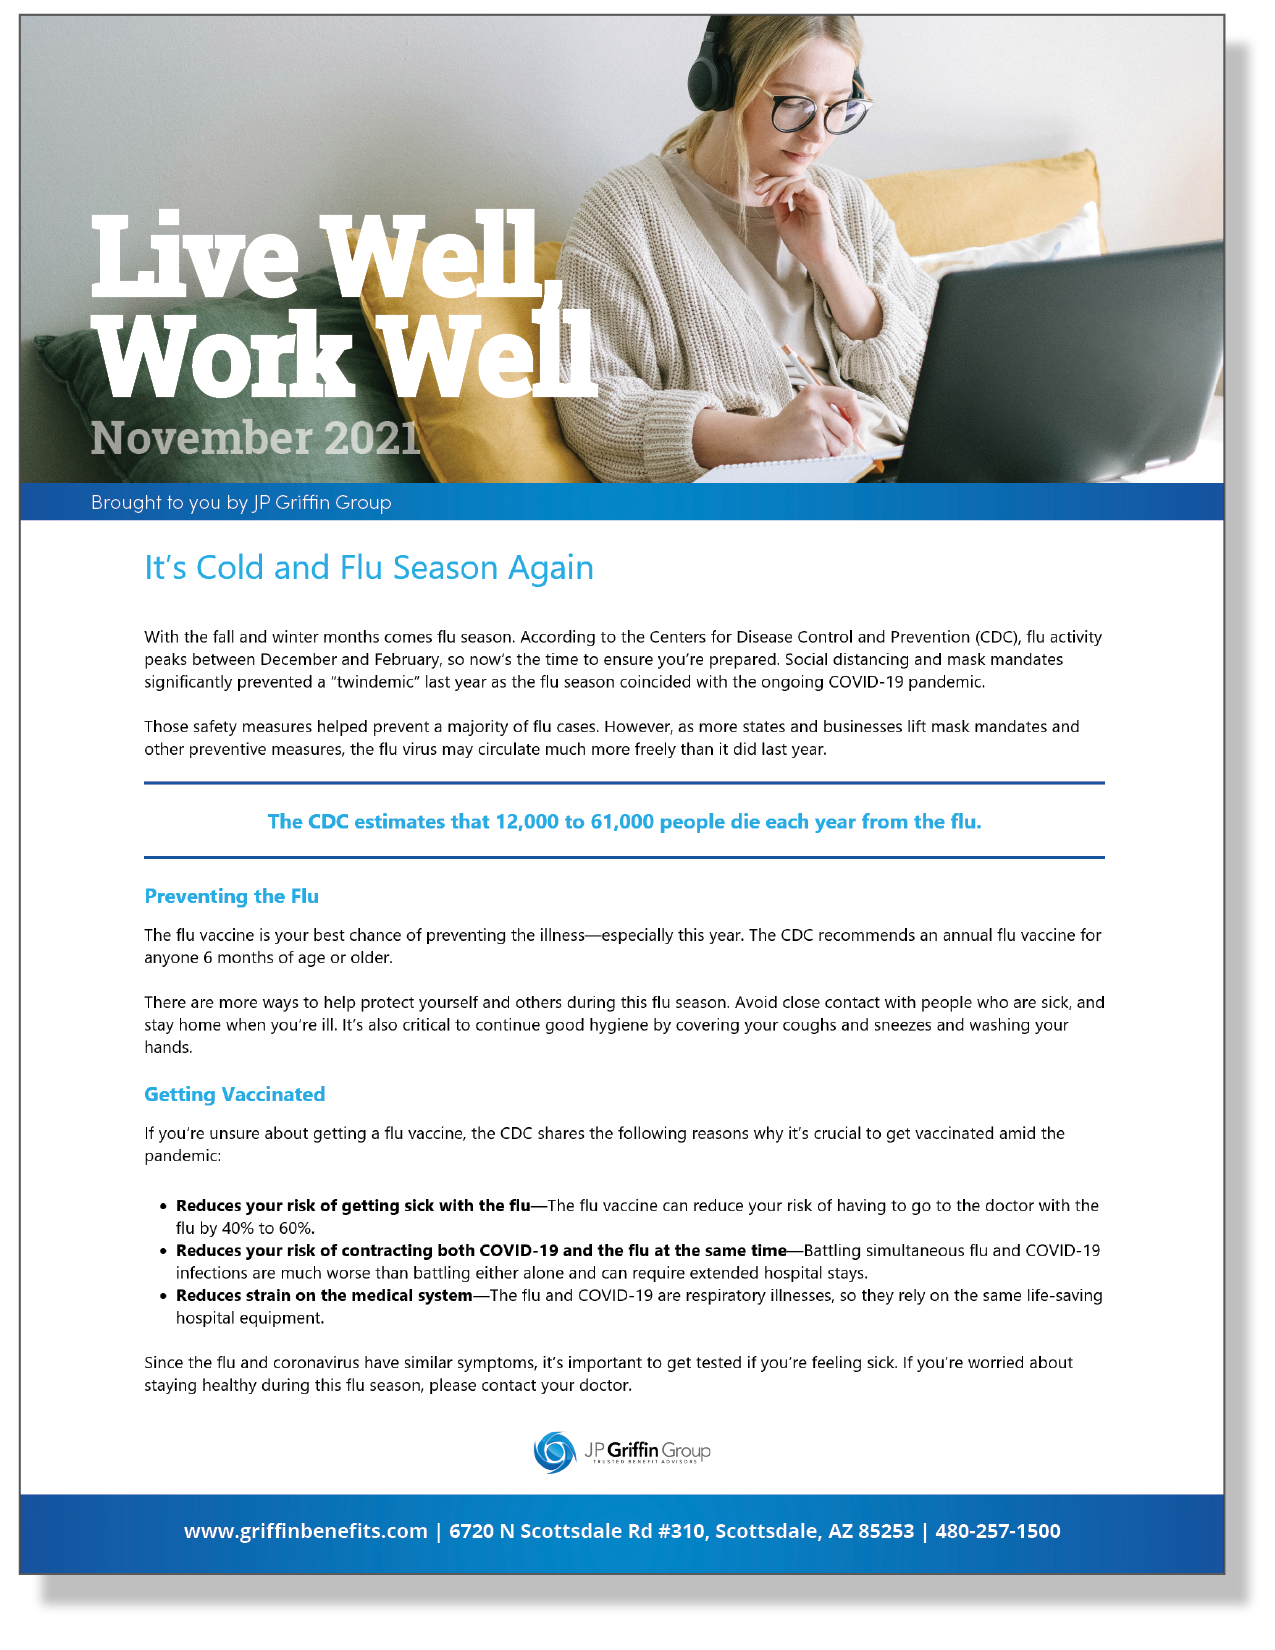 Live Well, Work Well Newsletter - November 2021 10.15